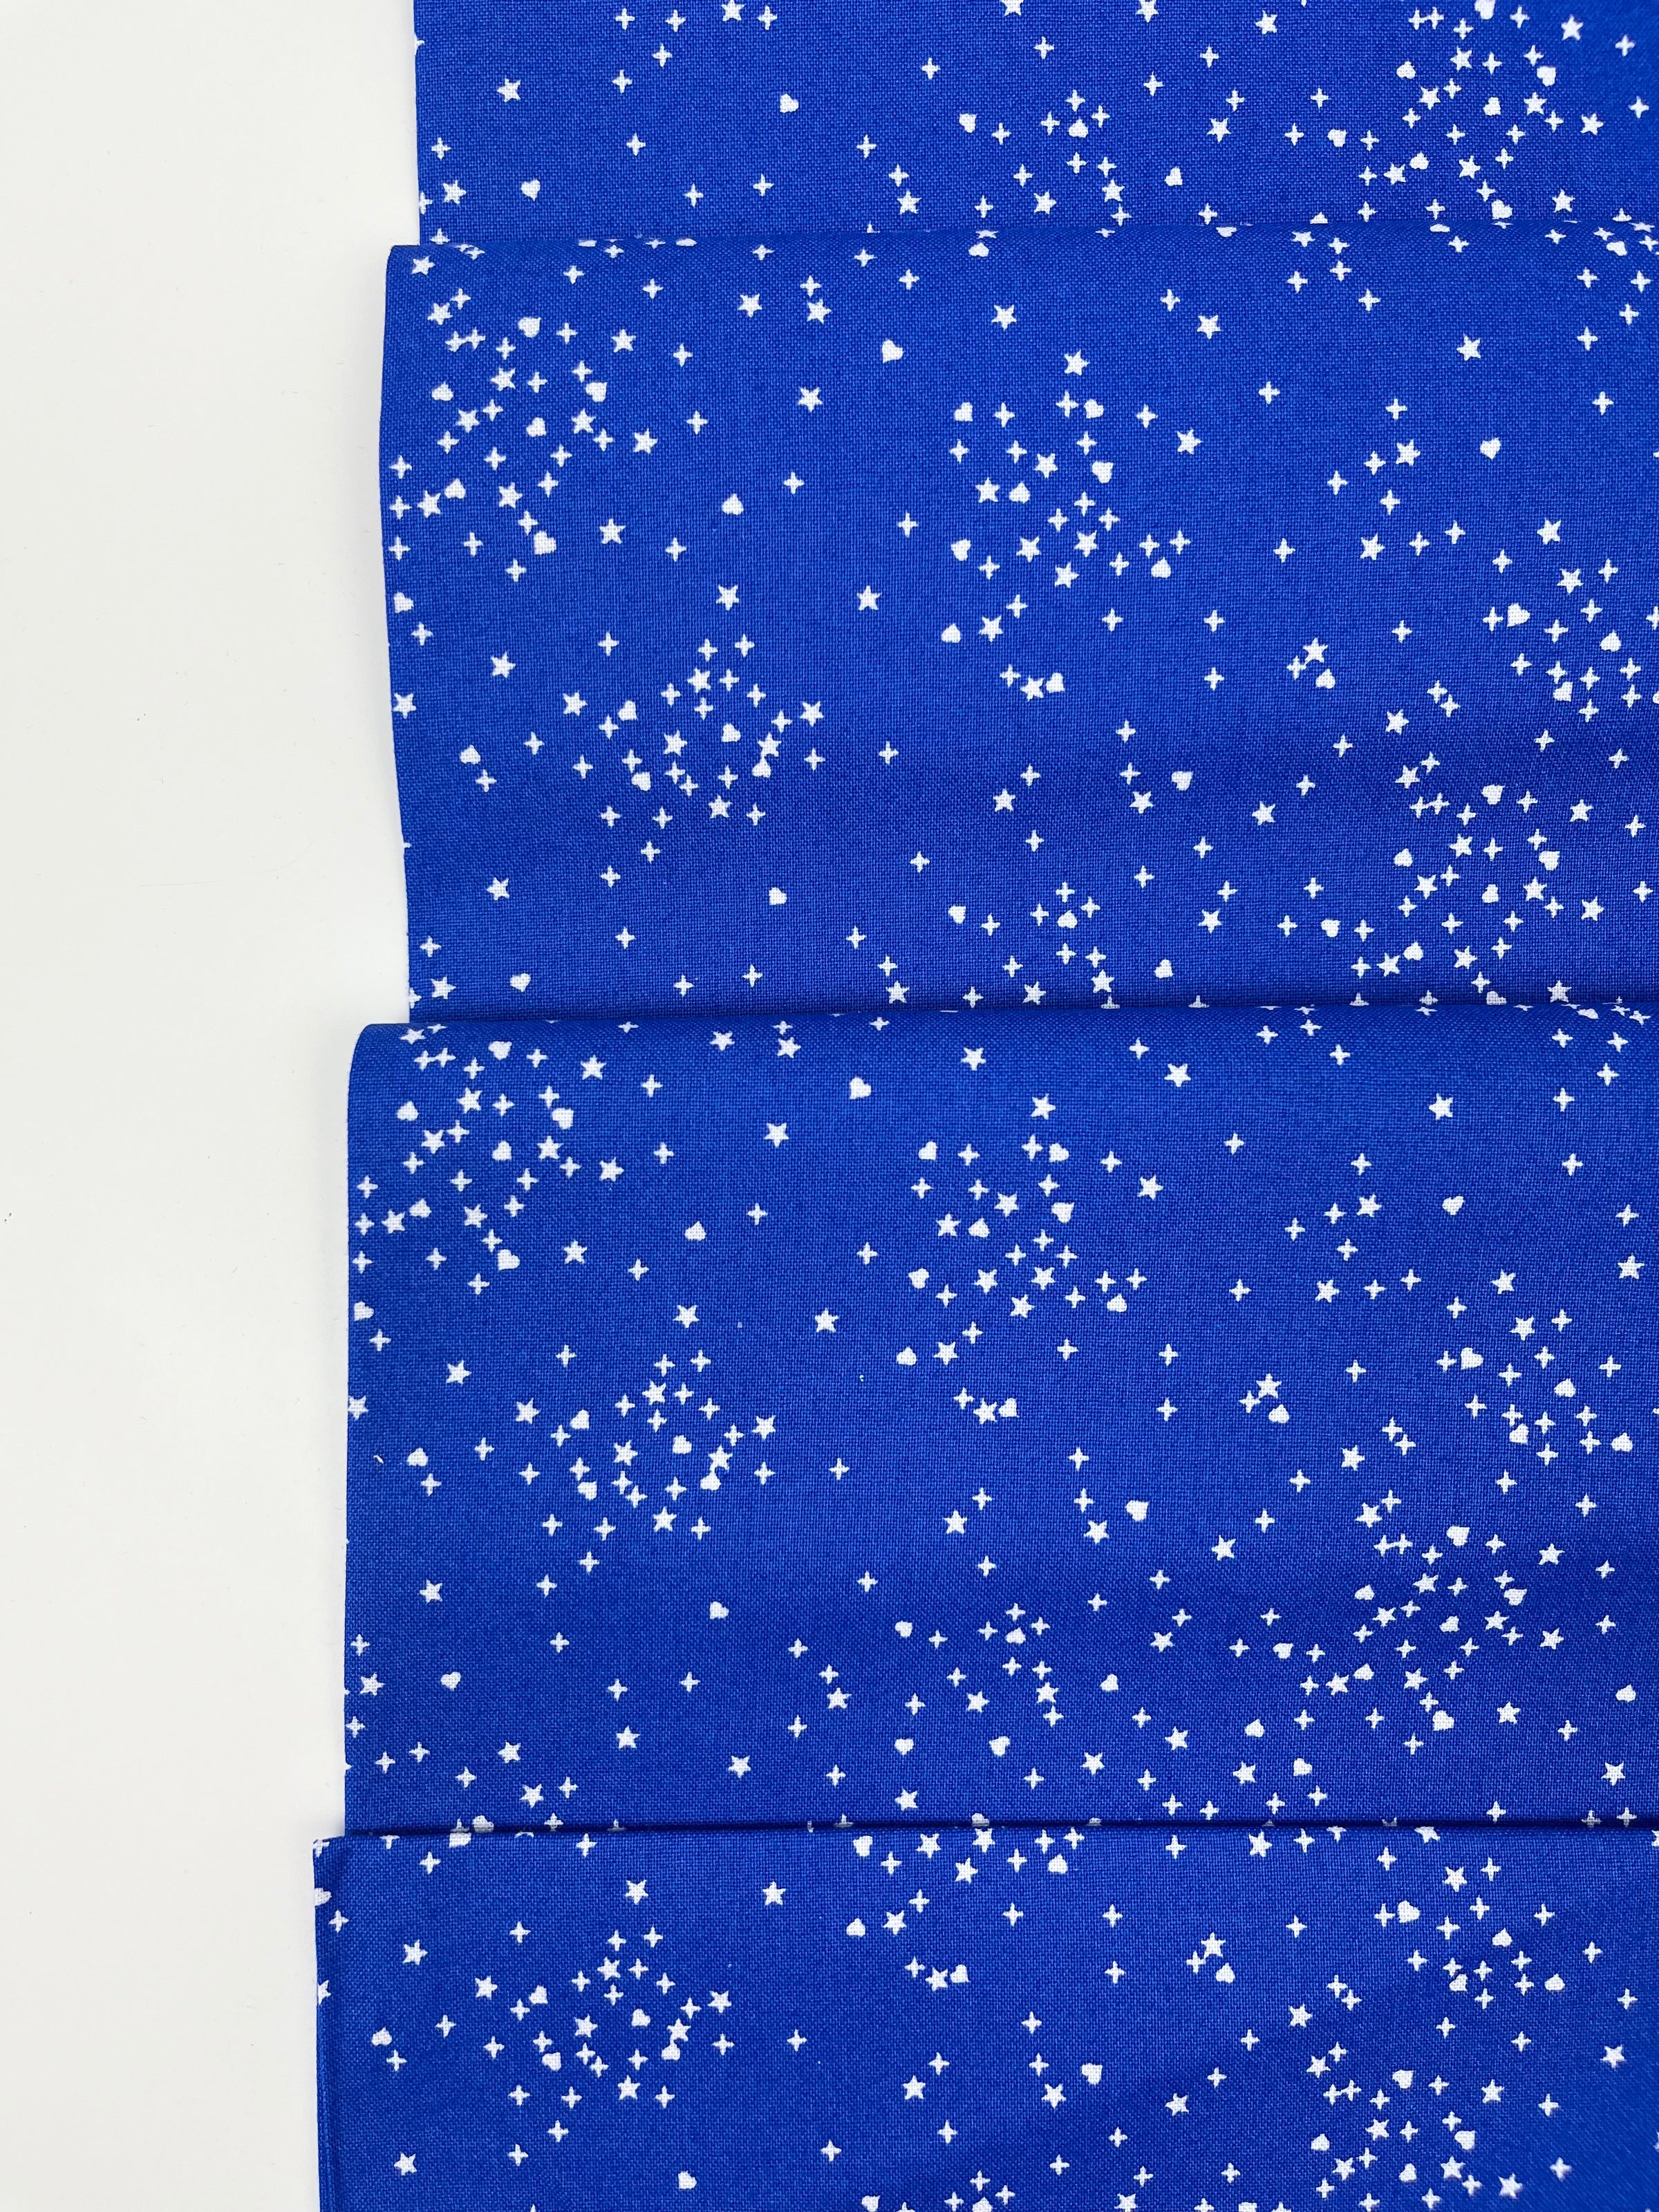 Hearts & Stars // Blue // Andover Fabrics